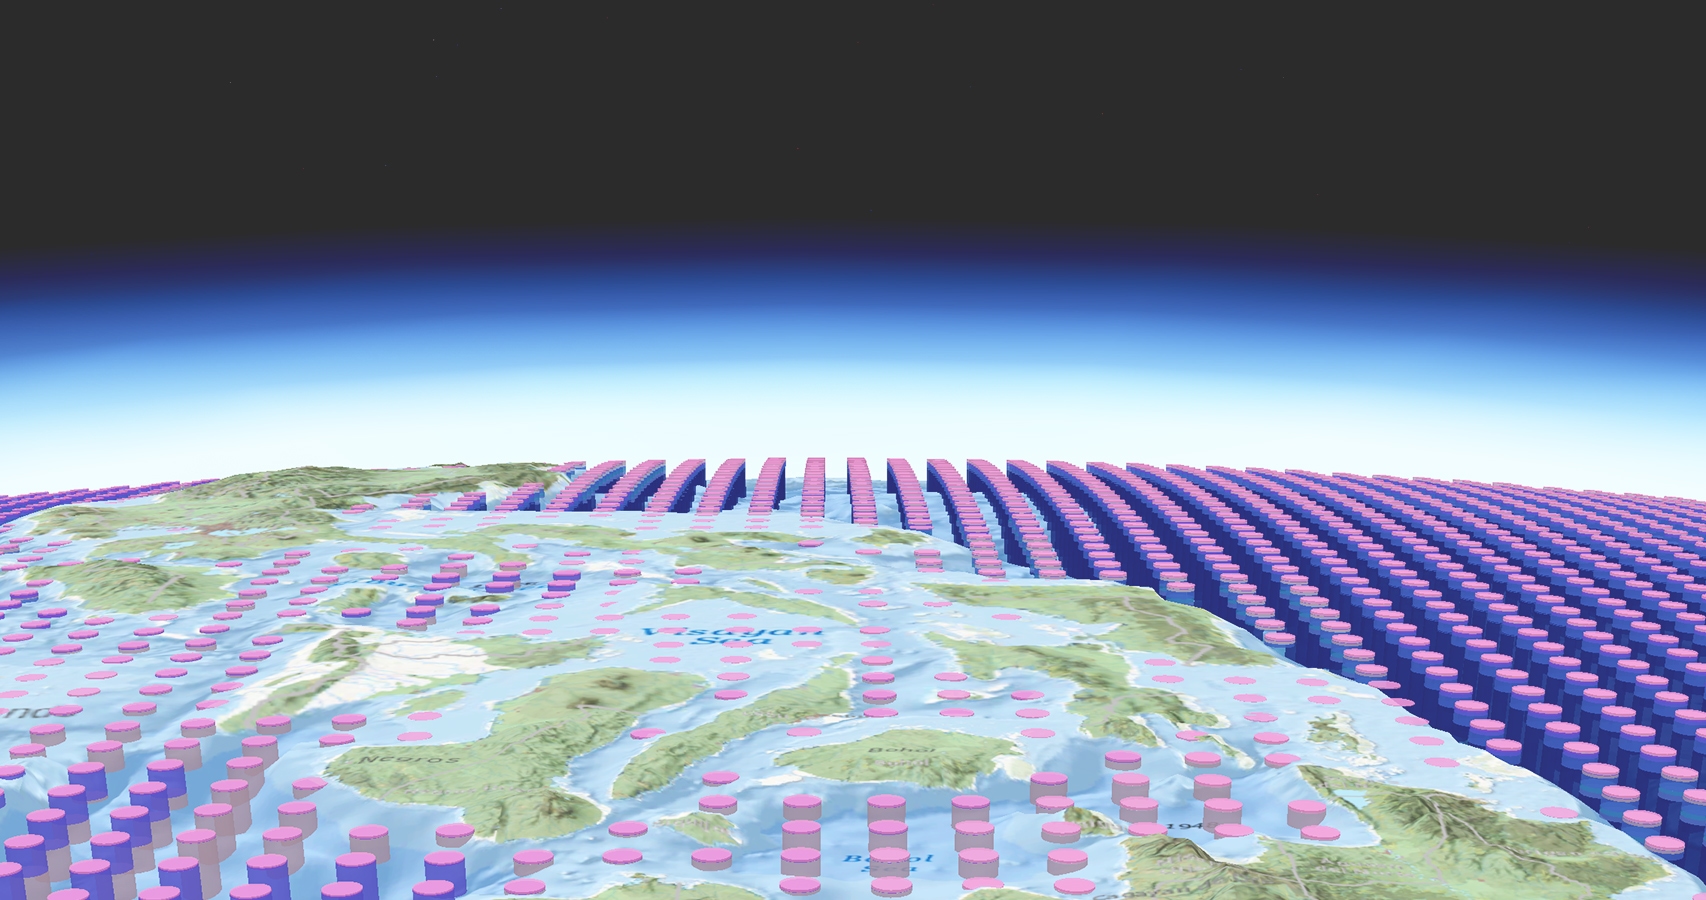 Immagine di cilindri rosa e viola disposti in file ordinate e una mappa a curve di livello stilizzata della Terra.